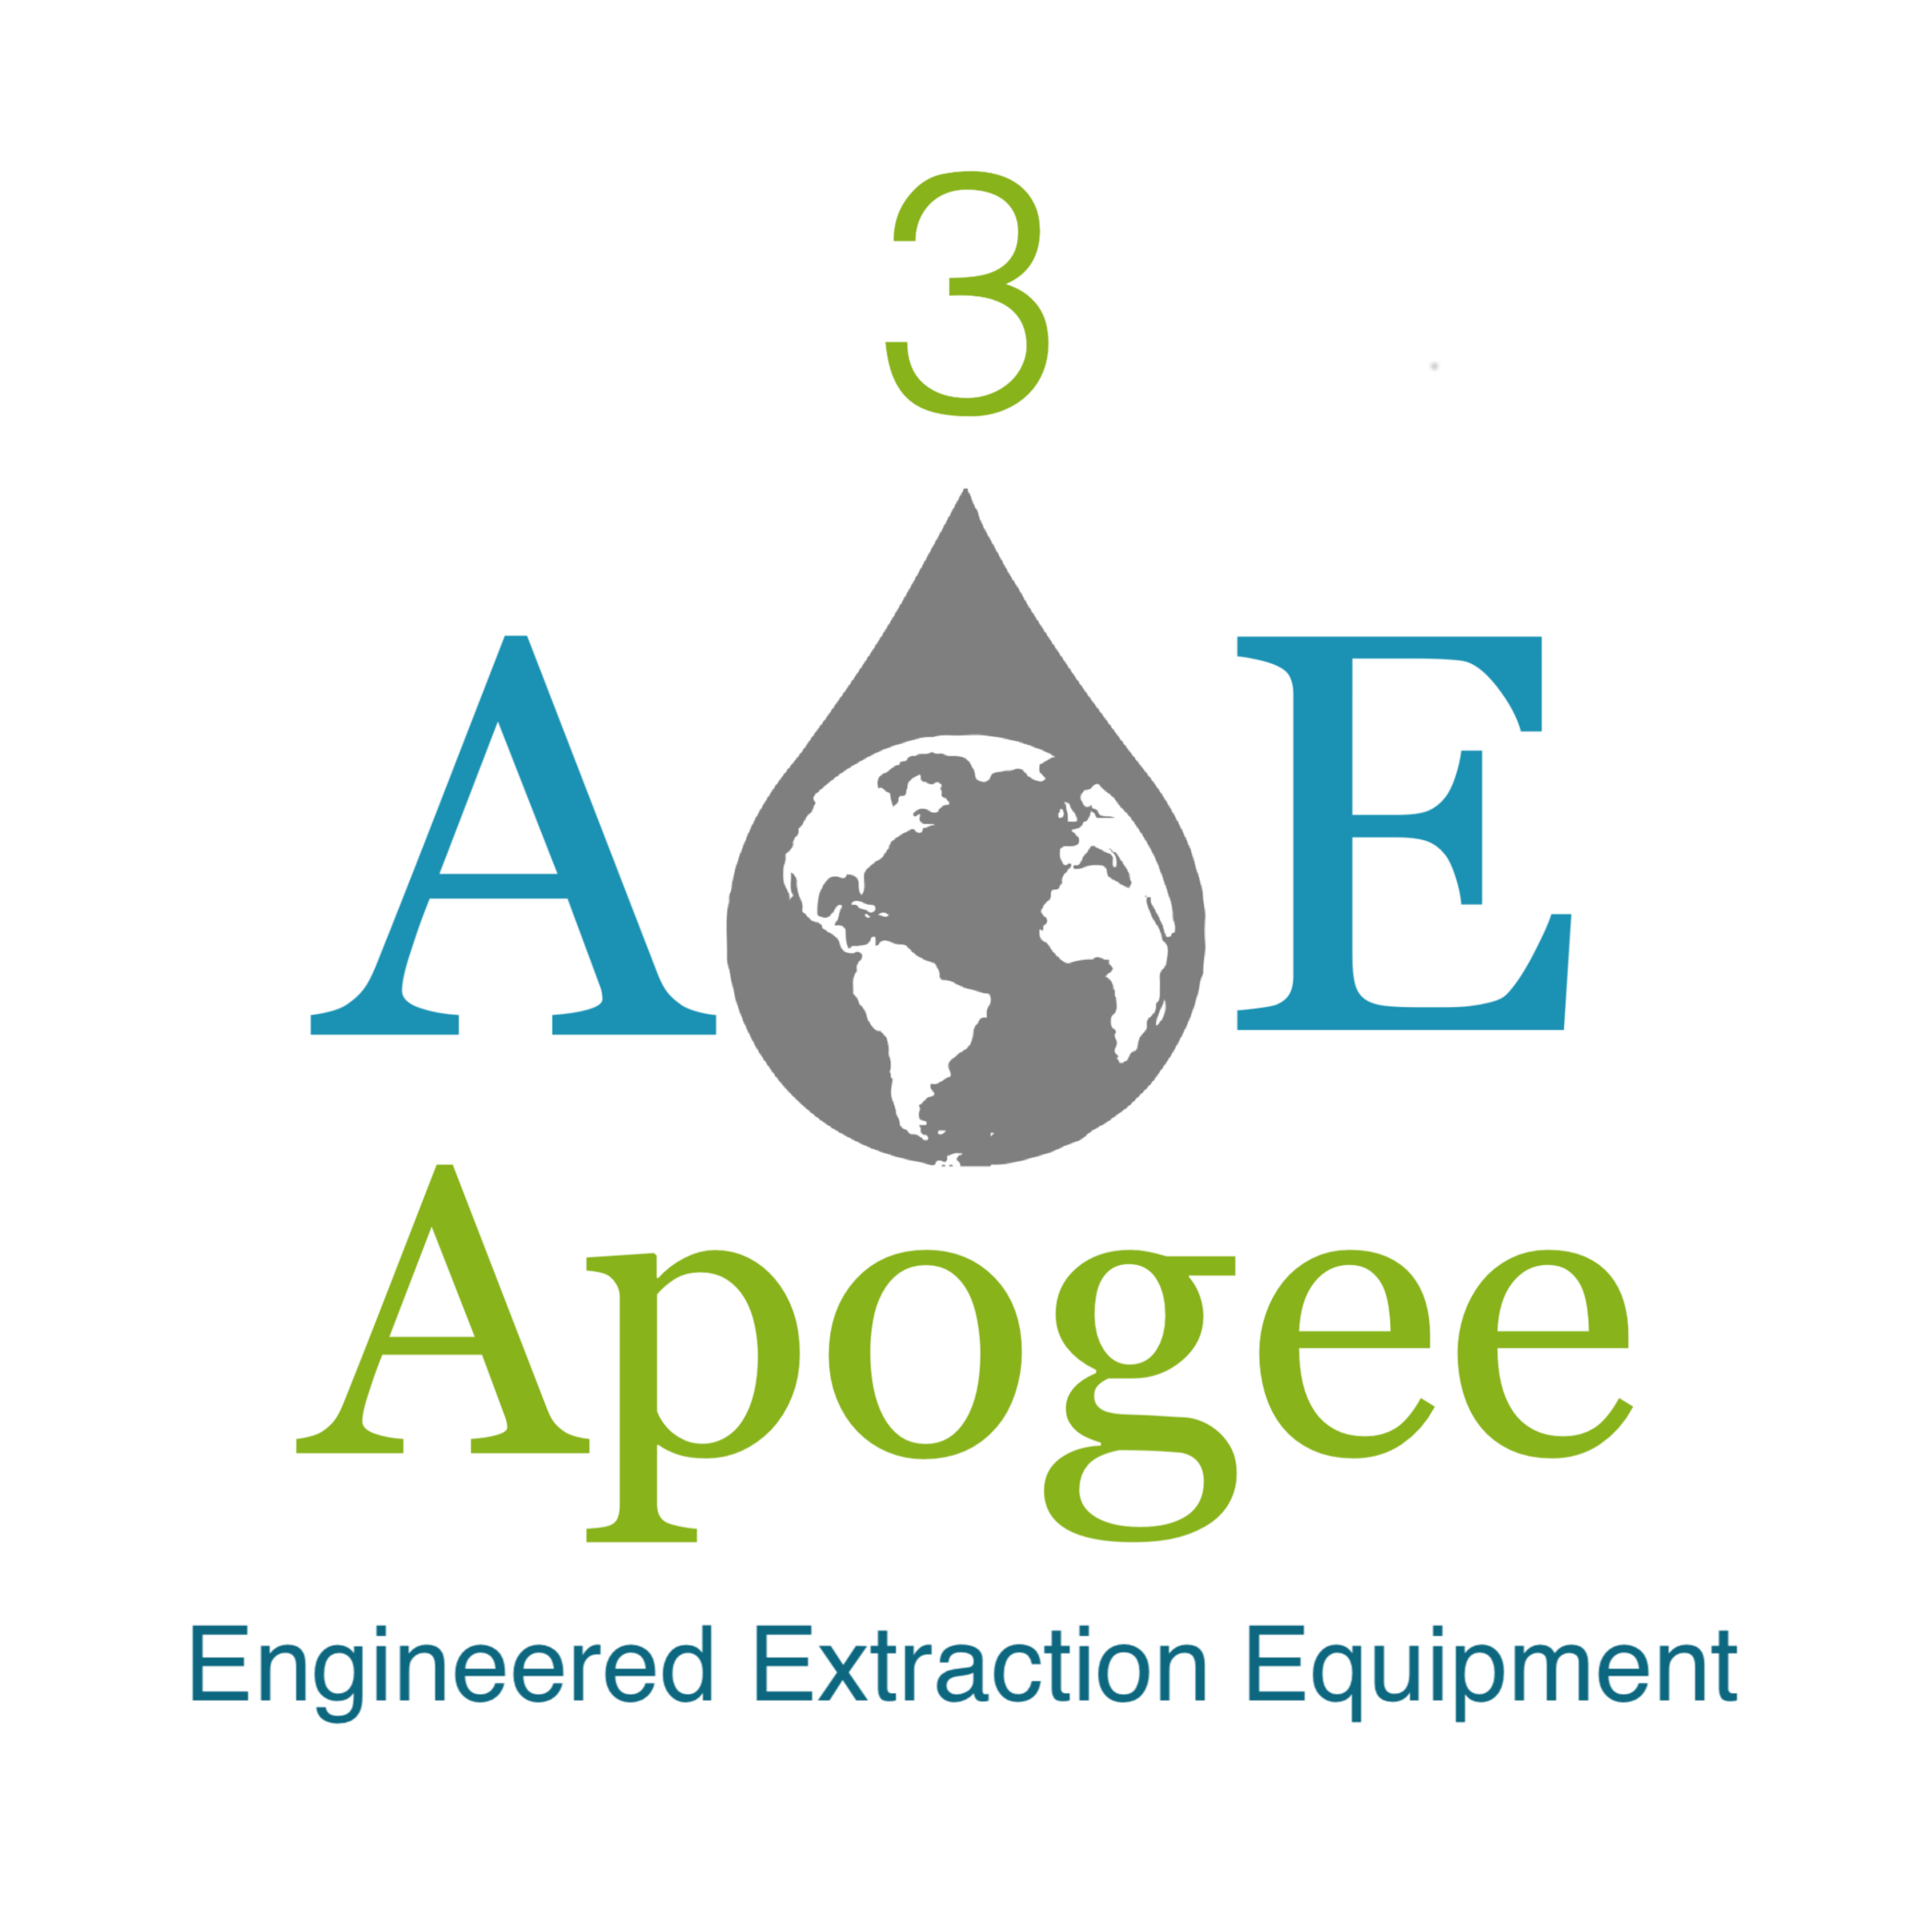 Apogee Engineered Extraction Equipment